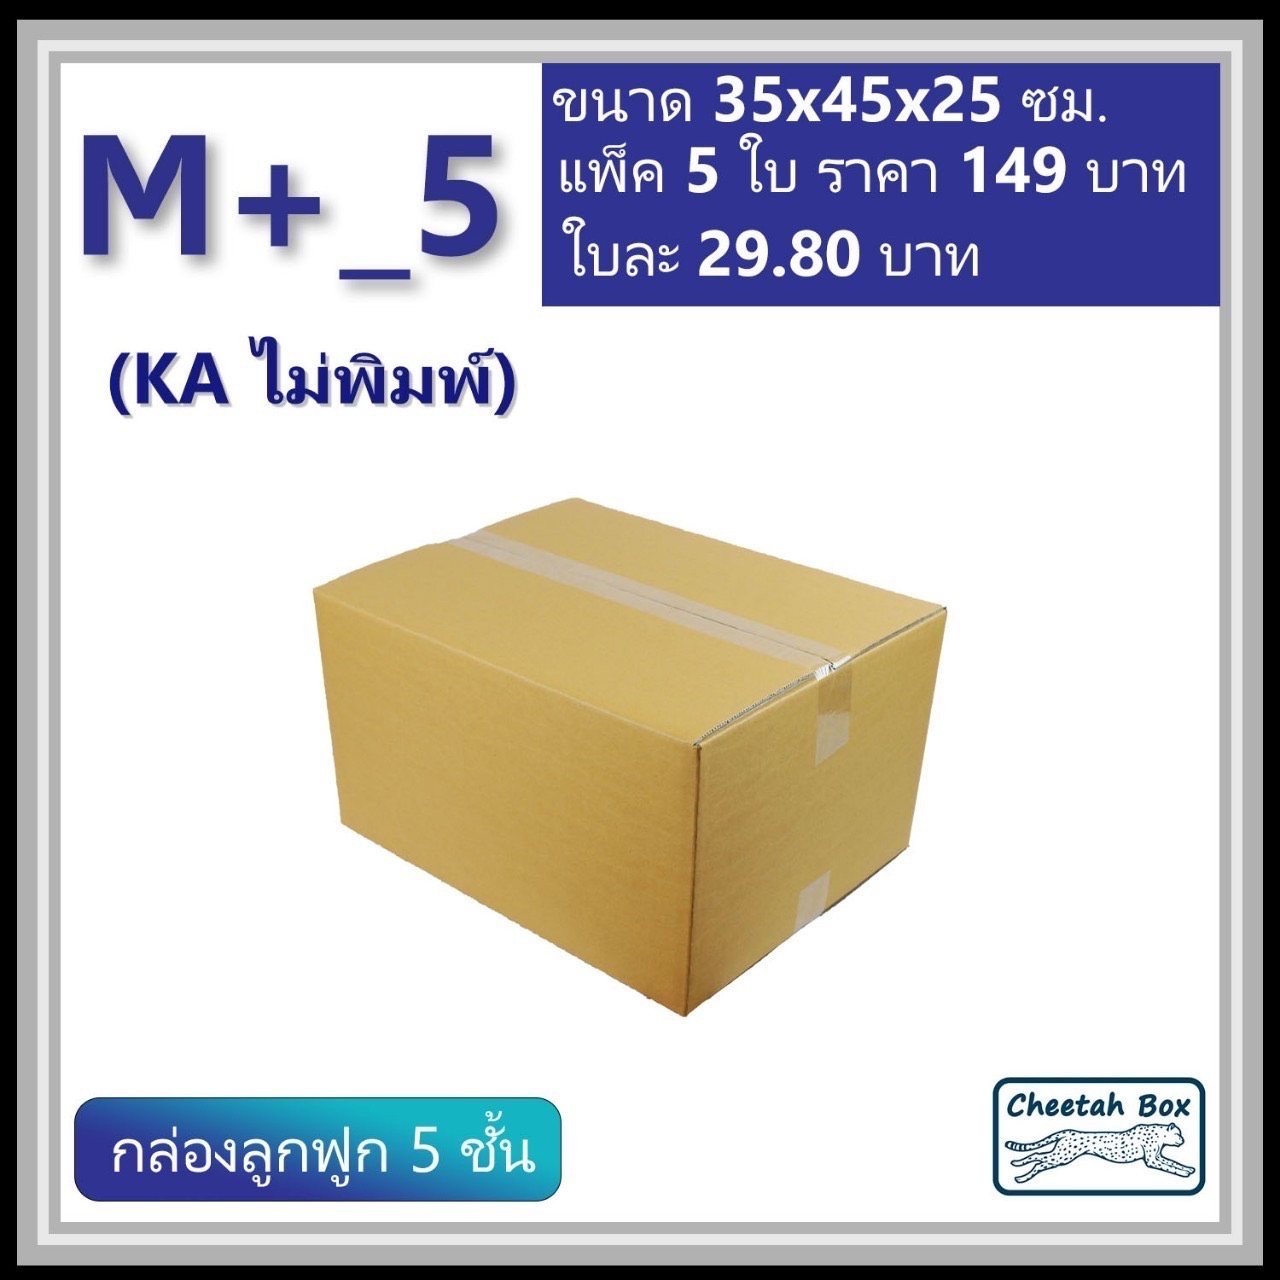 กล่องพัสดุ 5 ชั้น M+_5 (KA125) ไม่พิมพ์ (Post Box) ลูกฟูก 5 ชั้น ขนาด 35W x 45L x 25H cm.